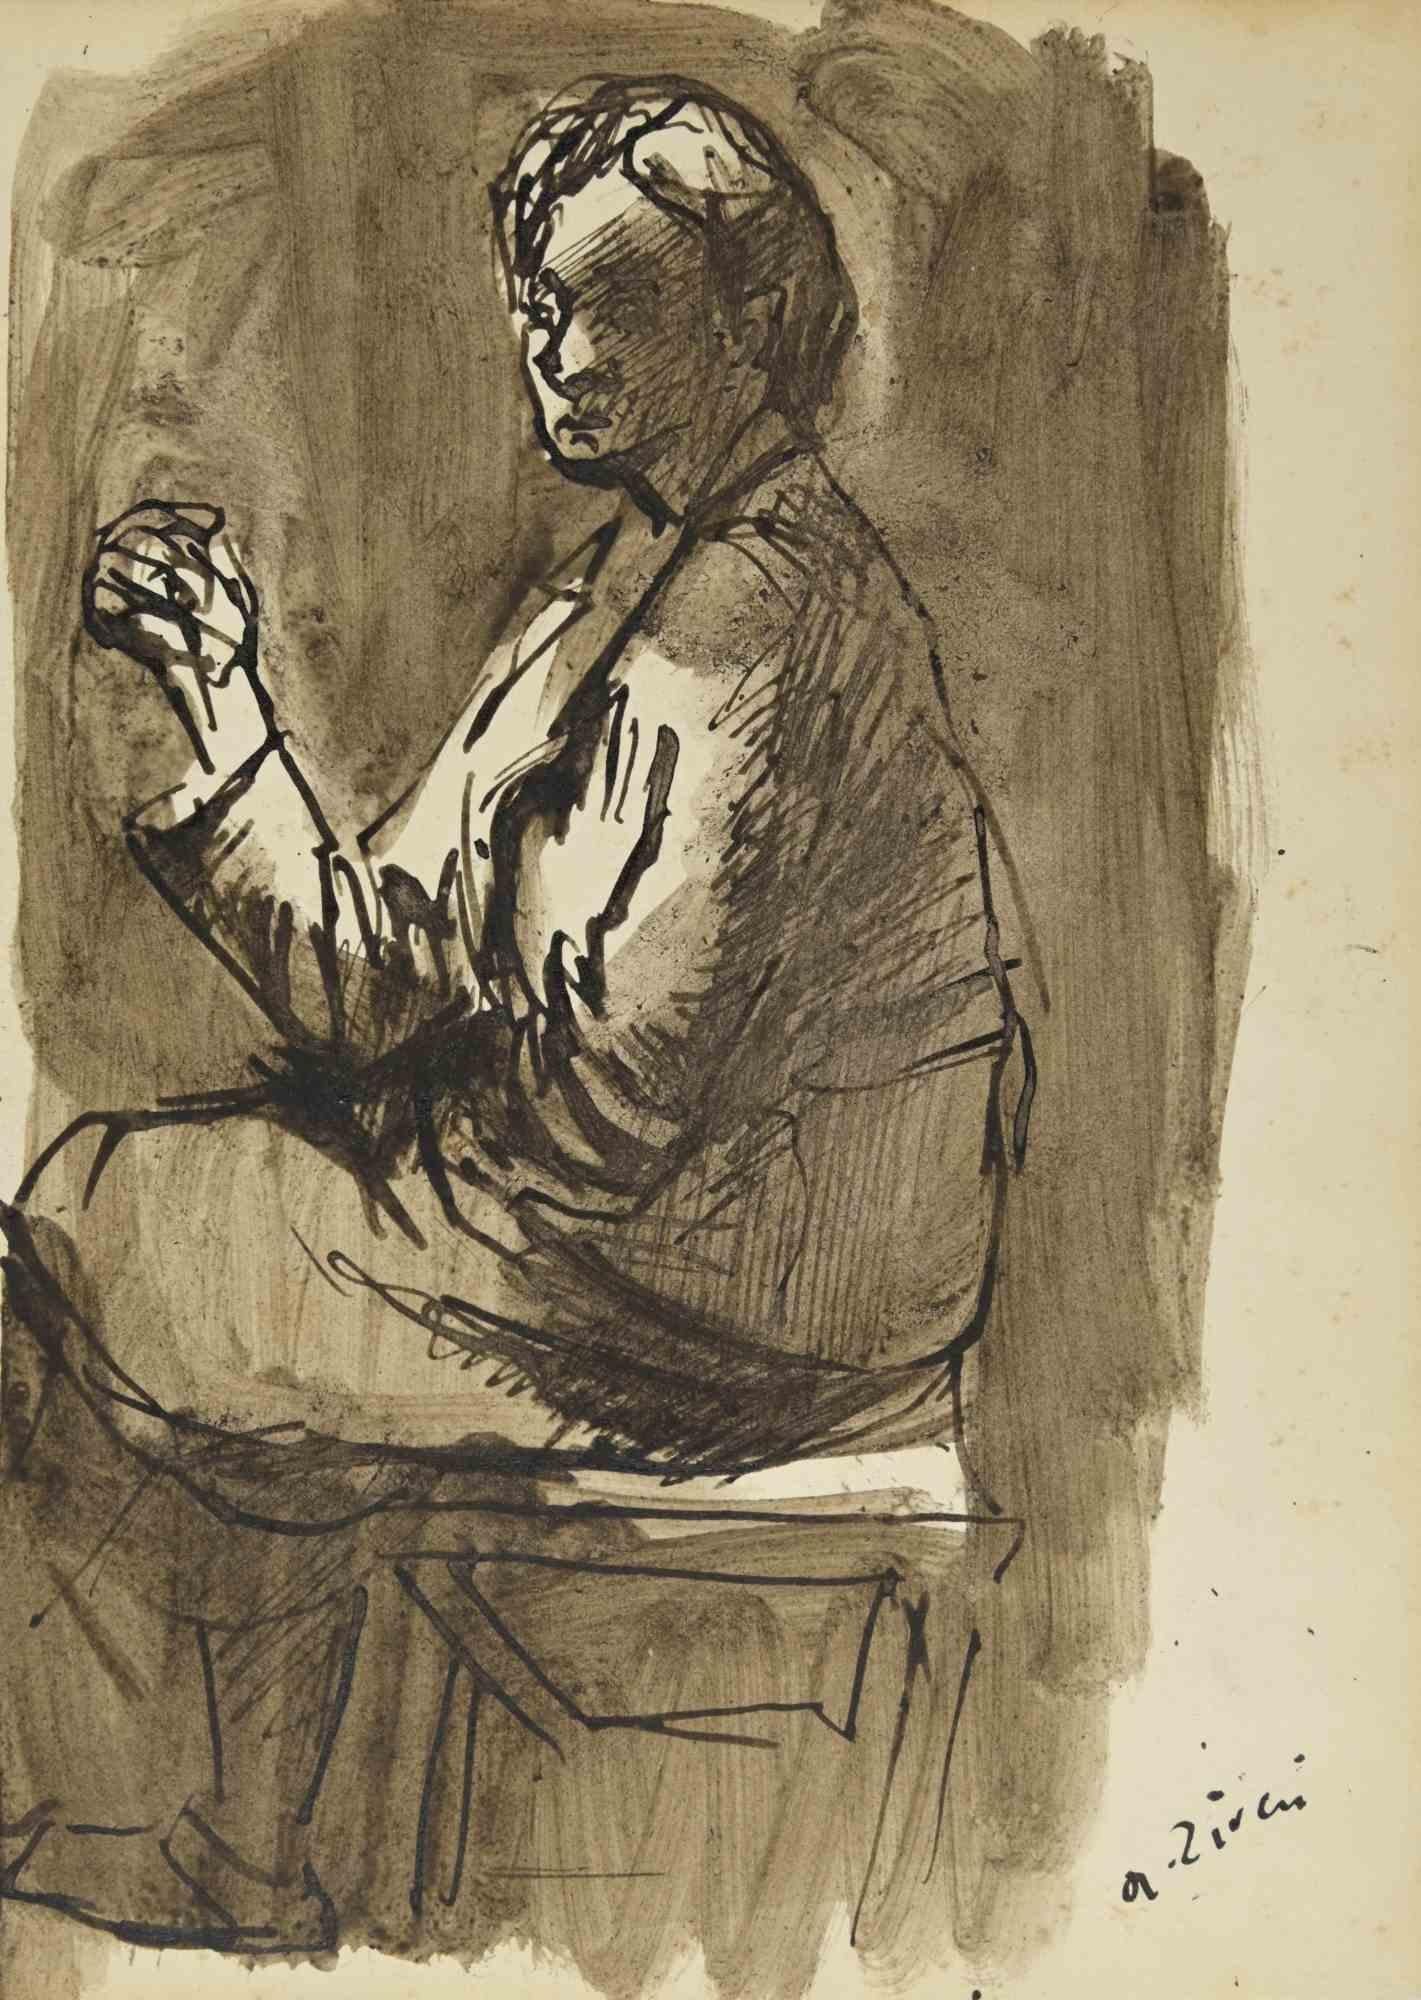 Die Dame ist eine Zeichnung von Alberto Ziveri aus den 1930er Jahren.

Aquarell und Tinte auf Papier.

Handsigniert.

In gutem Zustand.

Das Kunstwerk wird durch geschickte Striche meisterhaft dargestellt.

Alberto Ziveri (Rom, 1908 - 1990), der